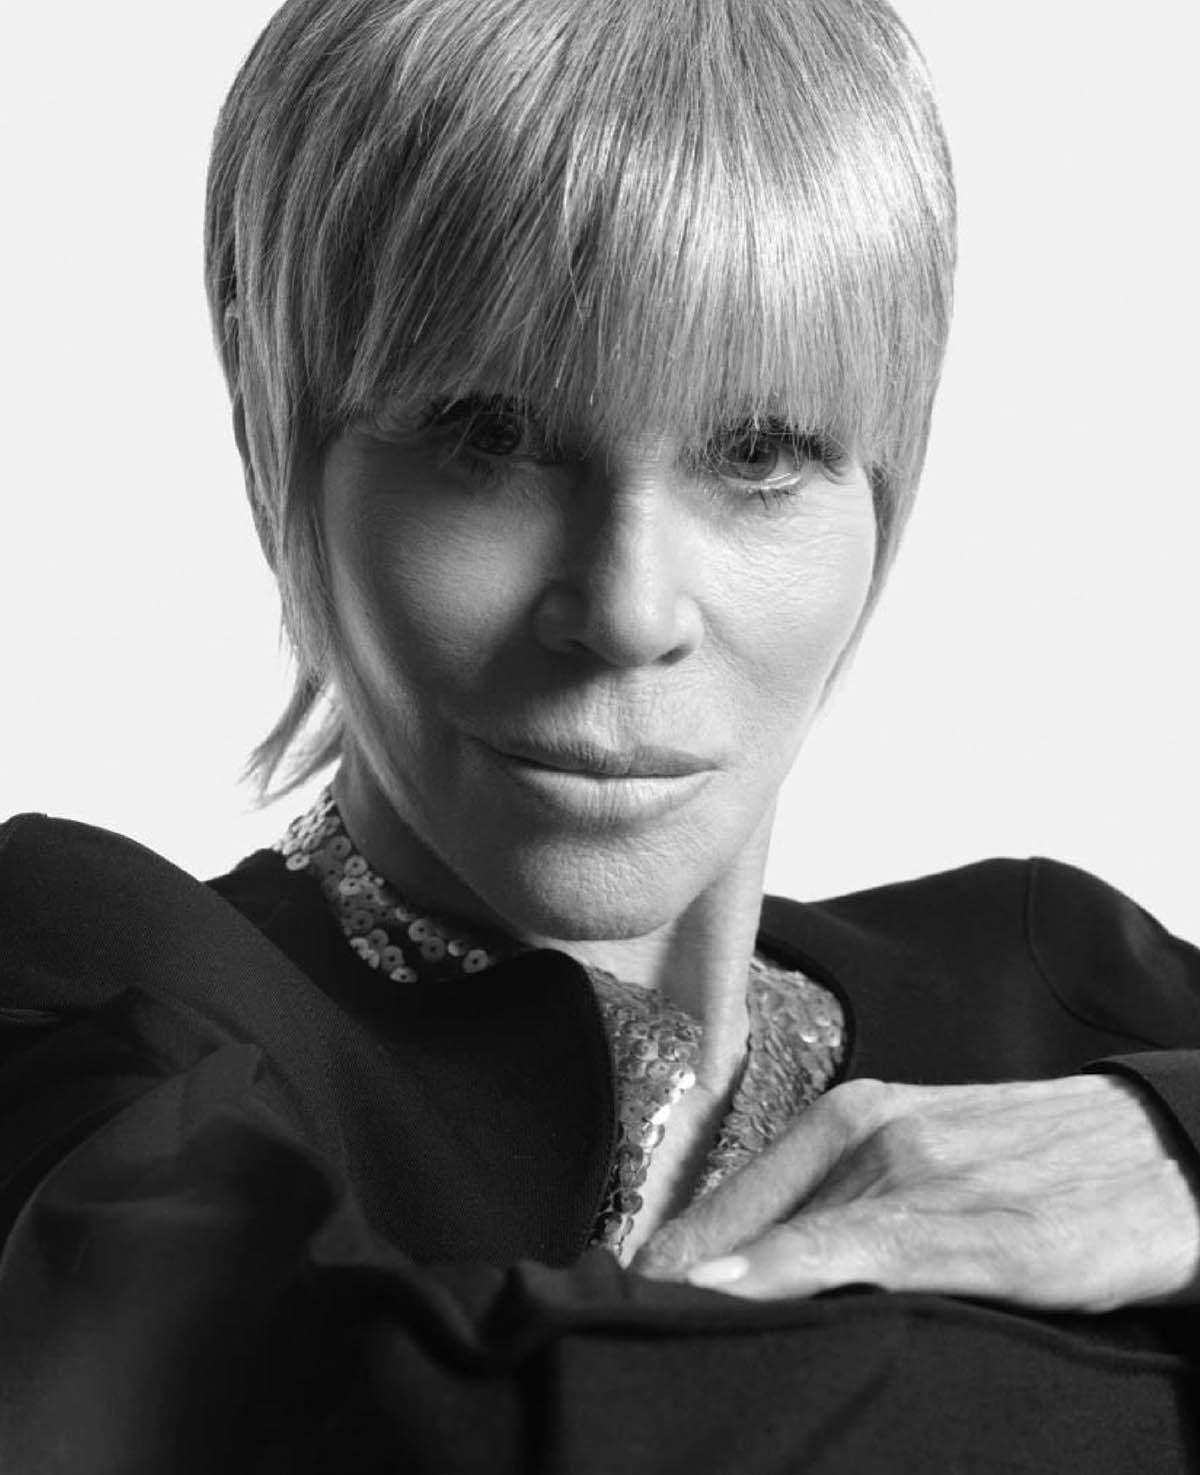 Jane Fonda covers Harper’s Bazaar US April 2021 by Mario Sorrenti